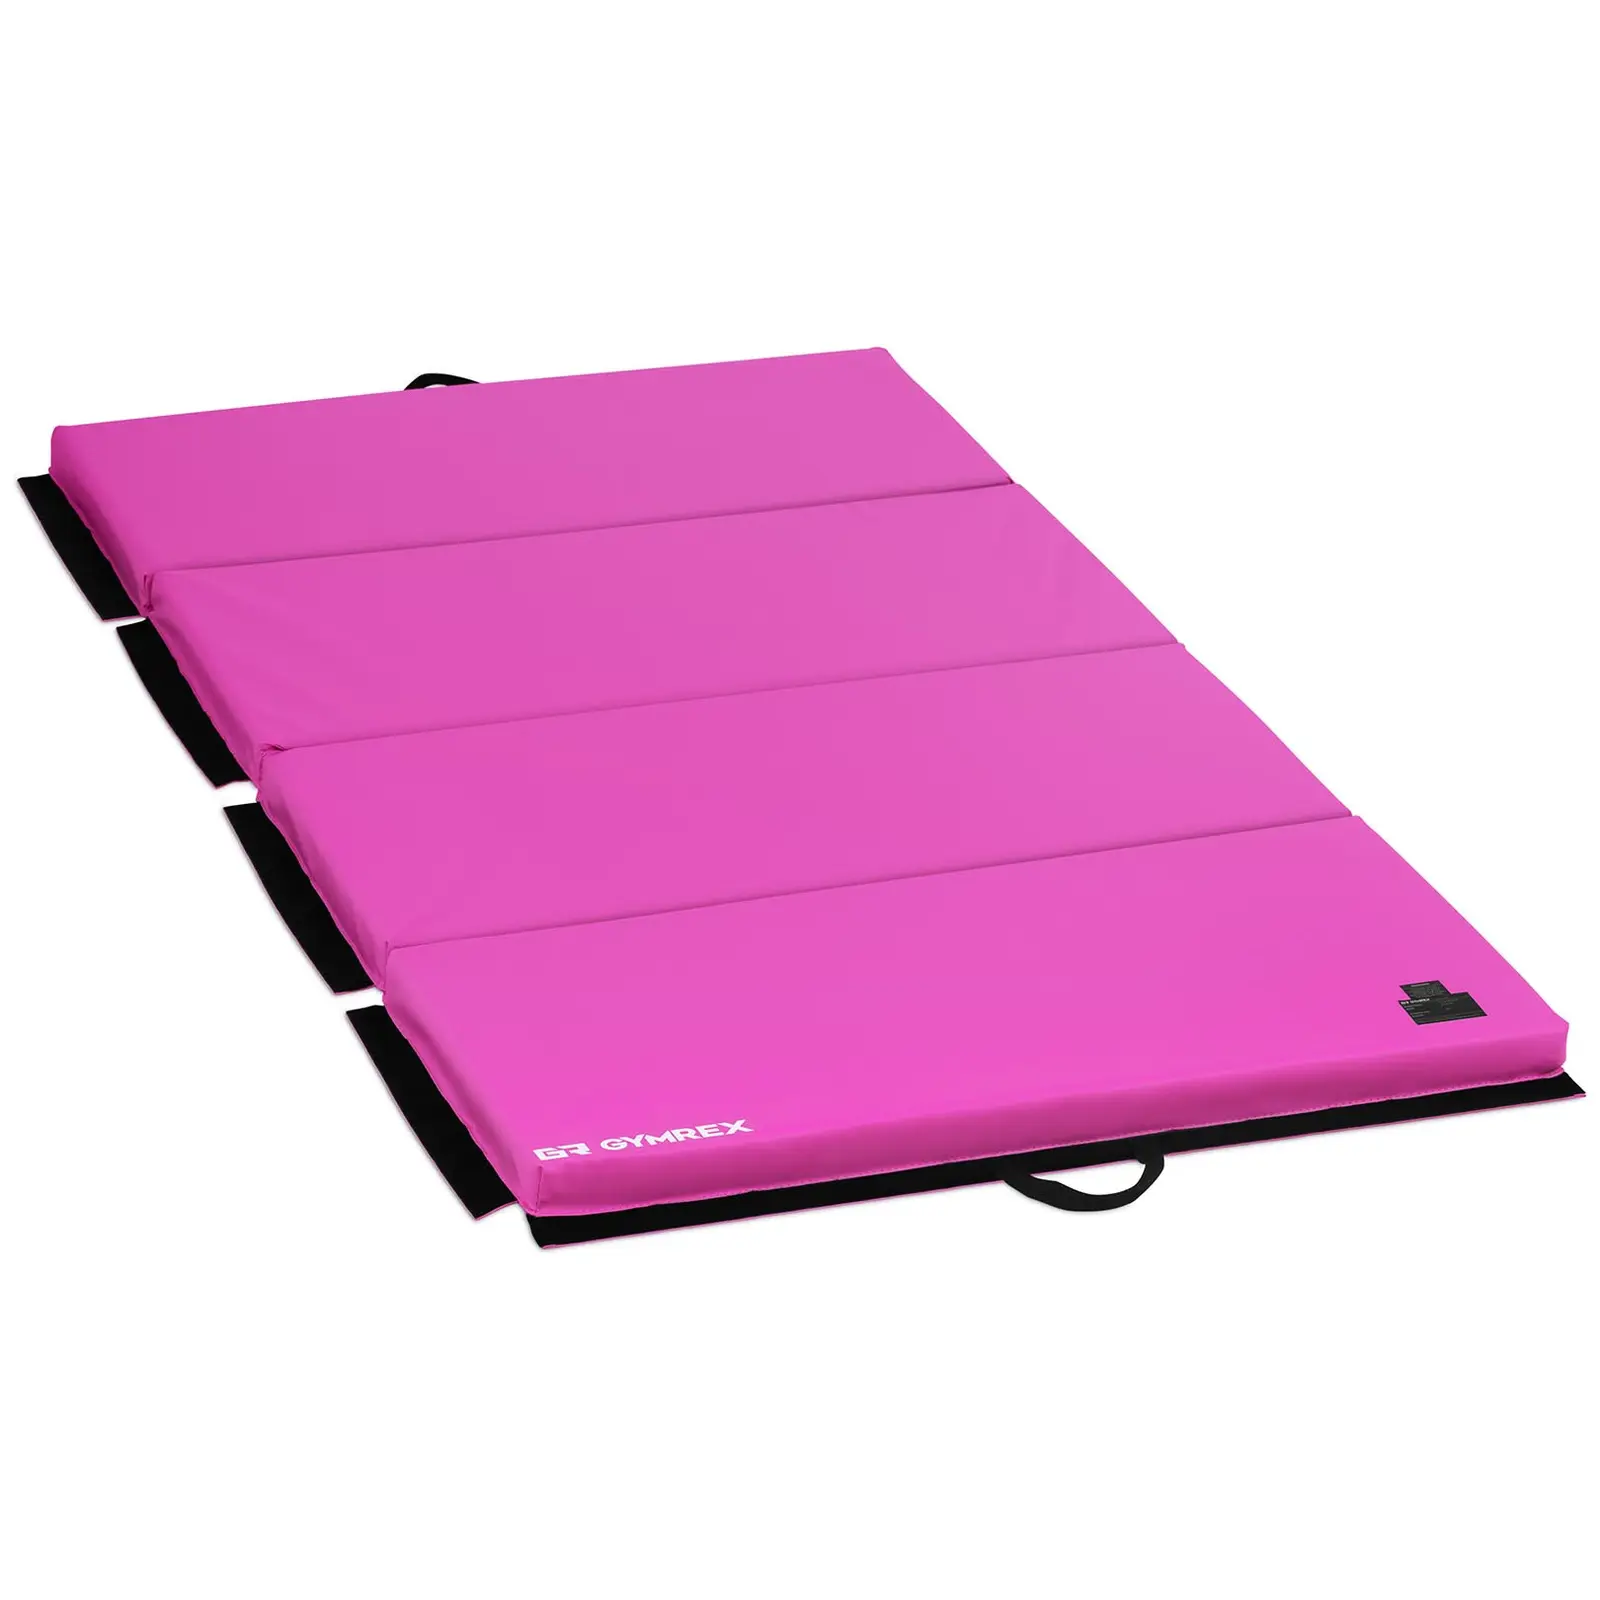 Weichbodenmatte - 200 x 100 x 5 cm - faltbar - Pink/Pink - belastbar bis 170kg